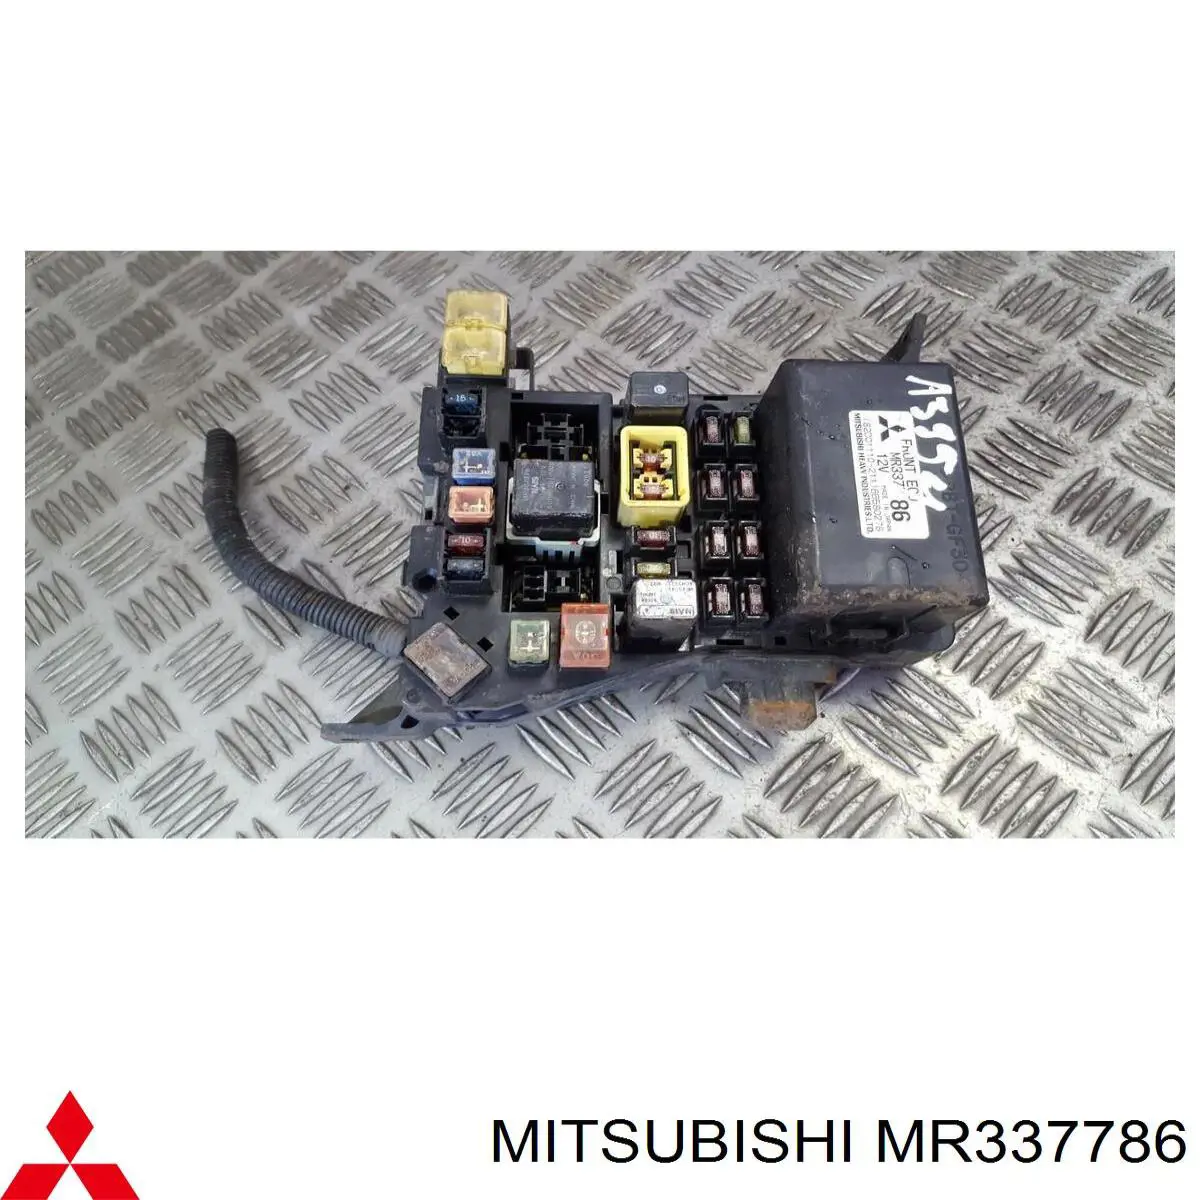 MR337786 Mitsubishi relé, faro